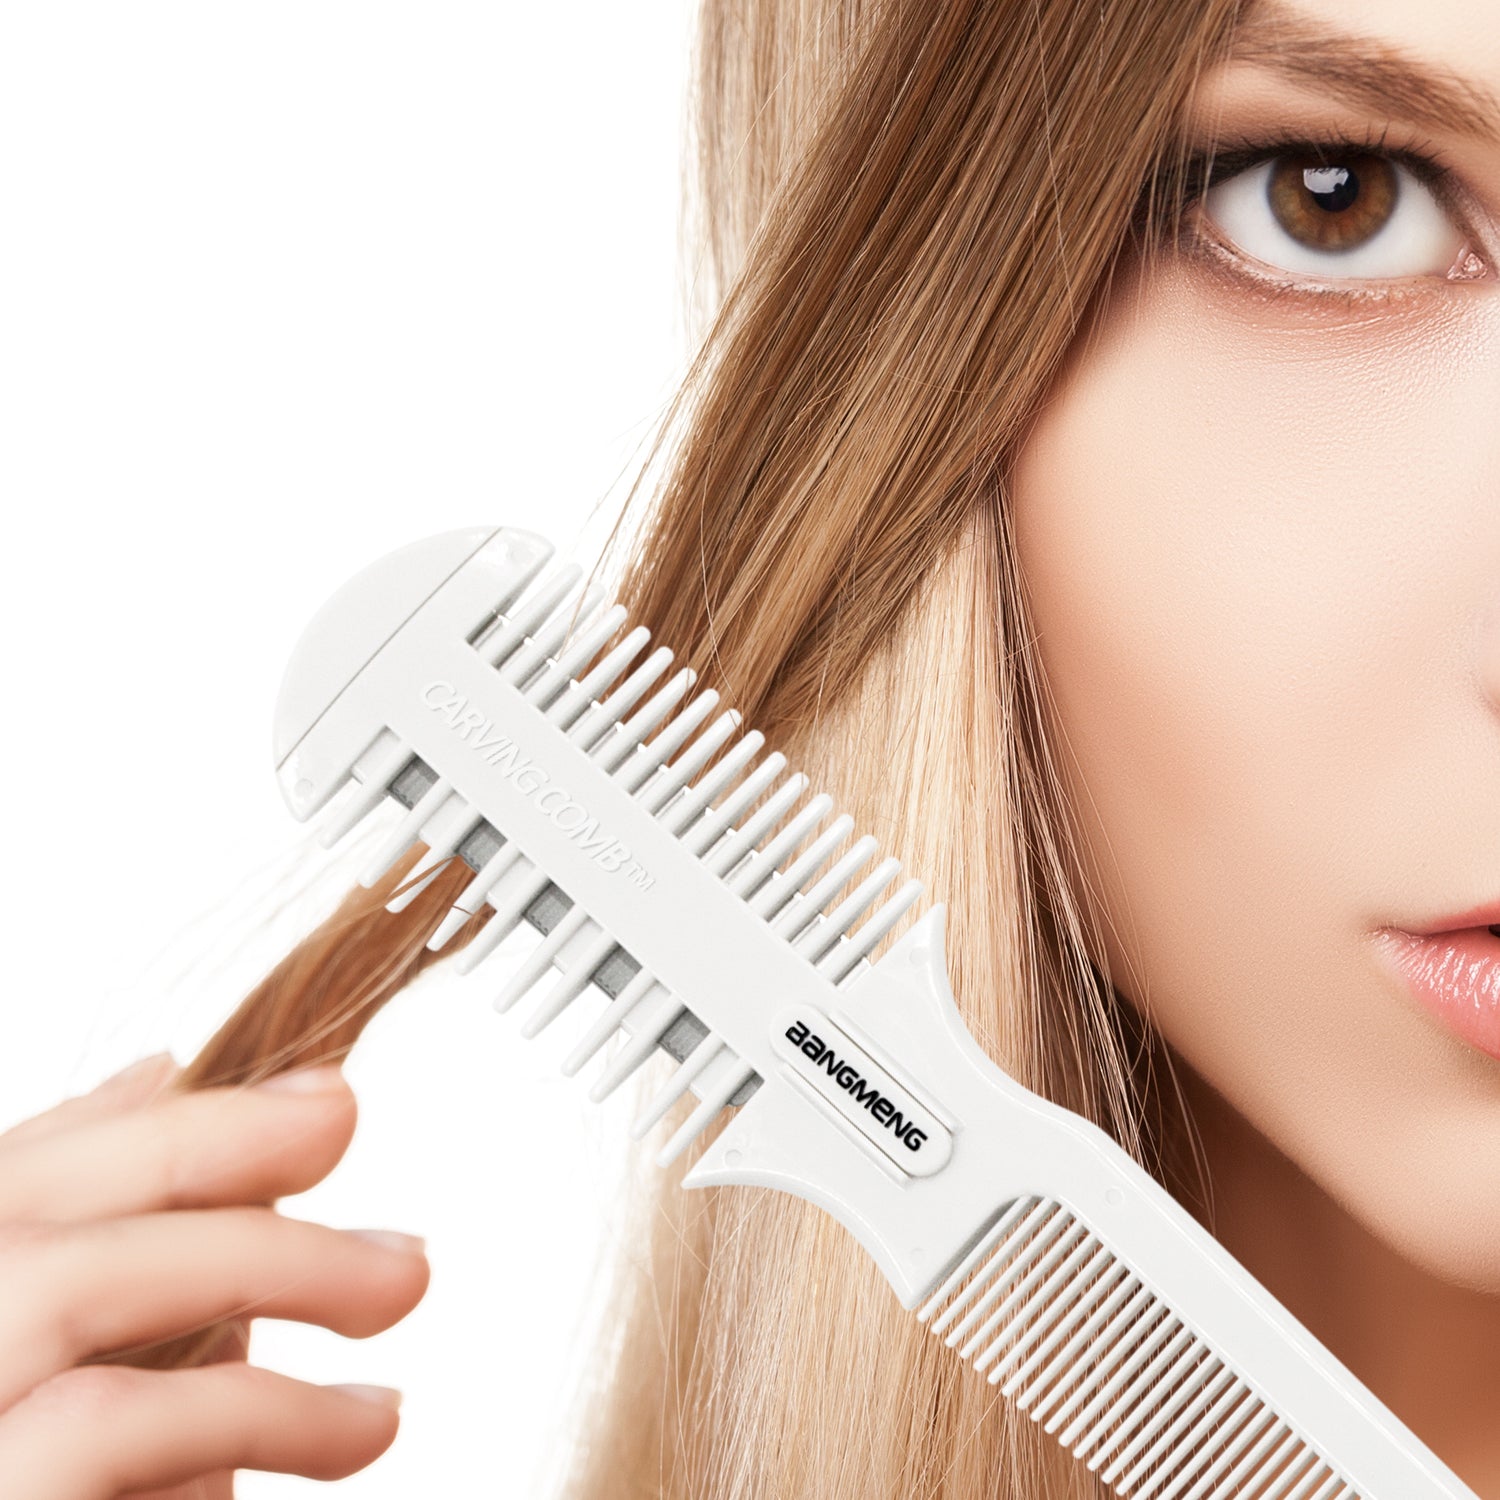 hair trimmer razor blades